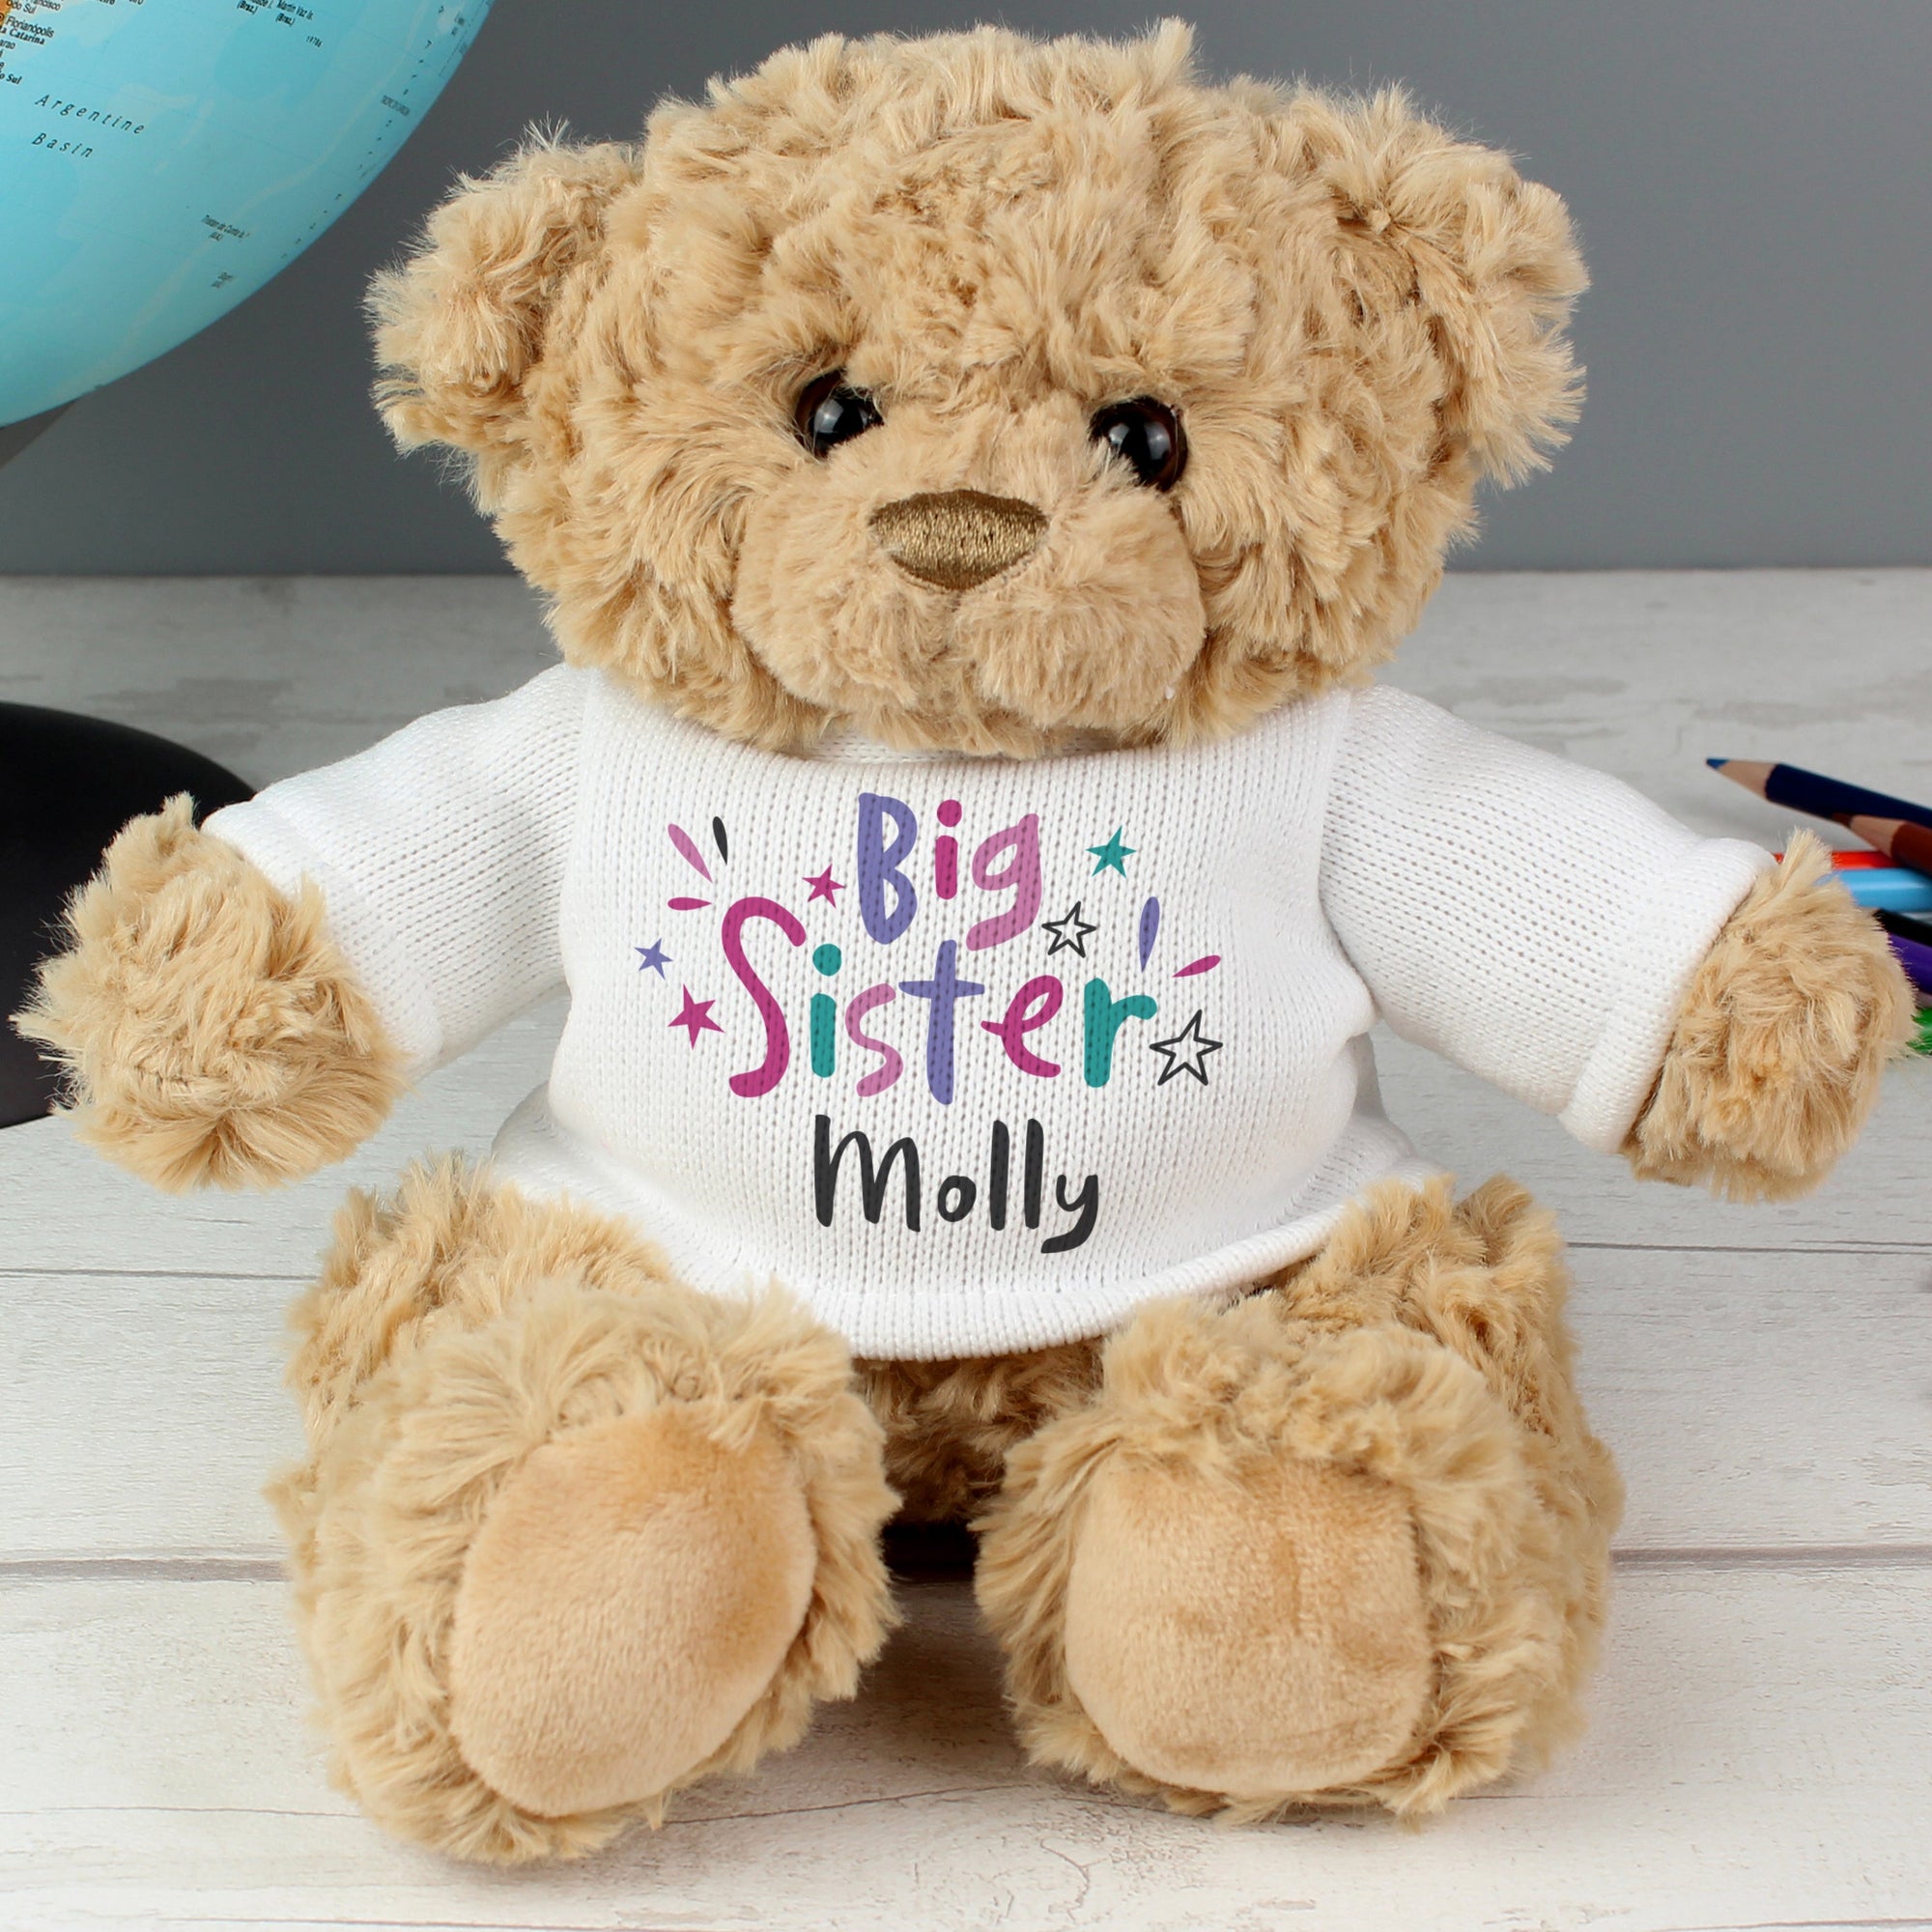 Personalised Big Sister Teddy Bear